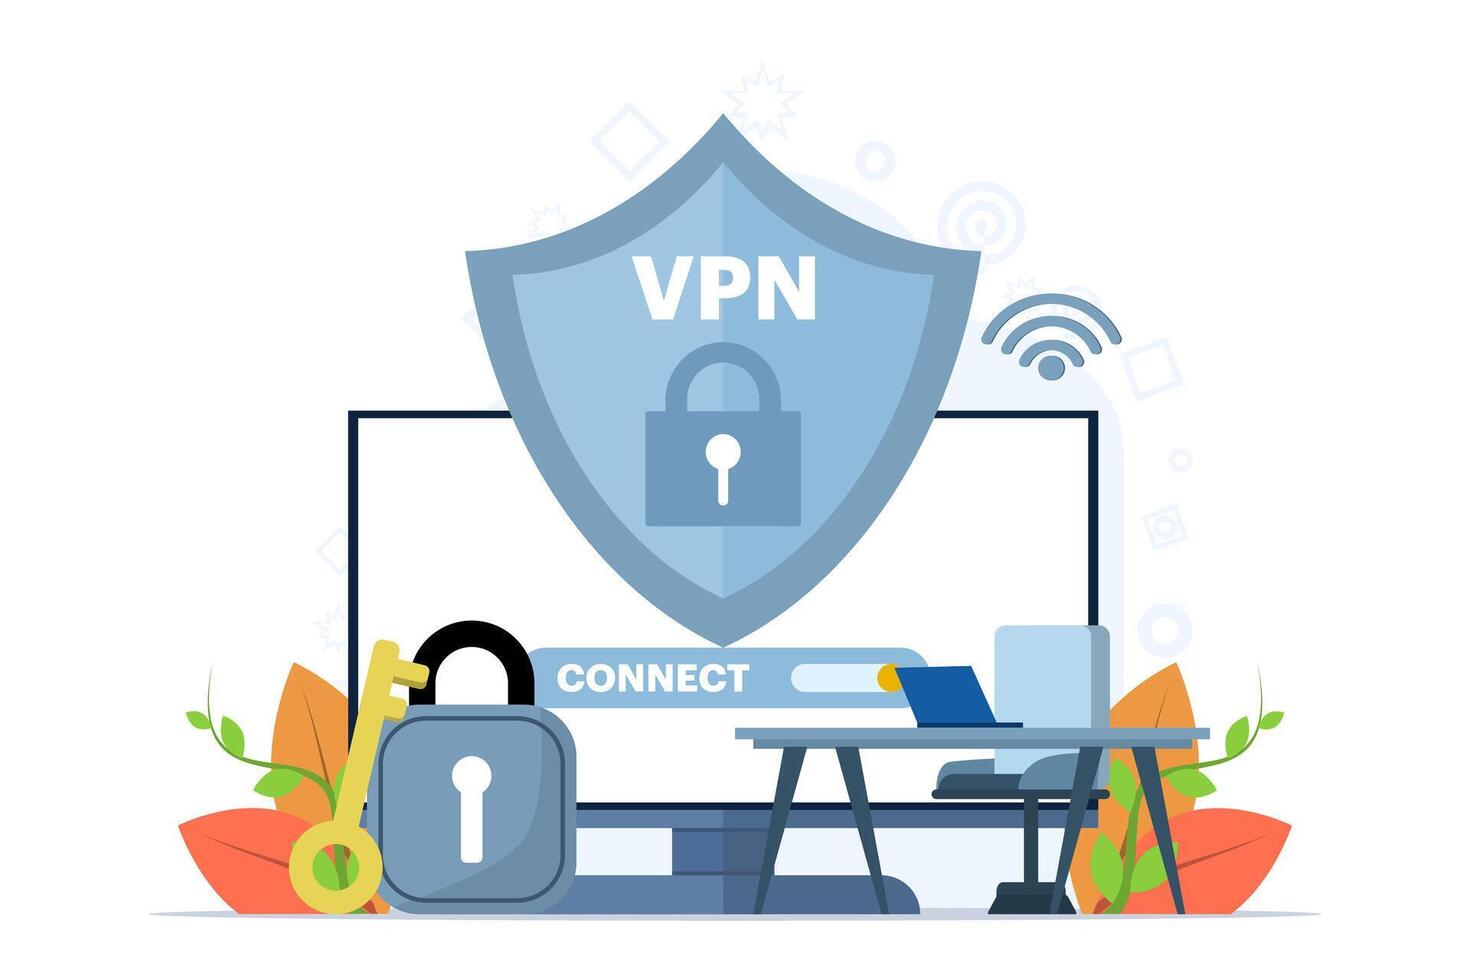 virtuell privat nätverk begrepp. använder sig av vpn teknologi systemet till skydda deras personlig data på smartphones, vpn teknologi systemet, browser avblockera webbplatser, internet förbindelse. vektor